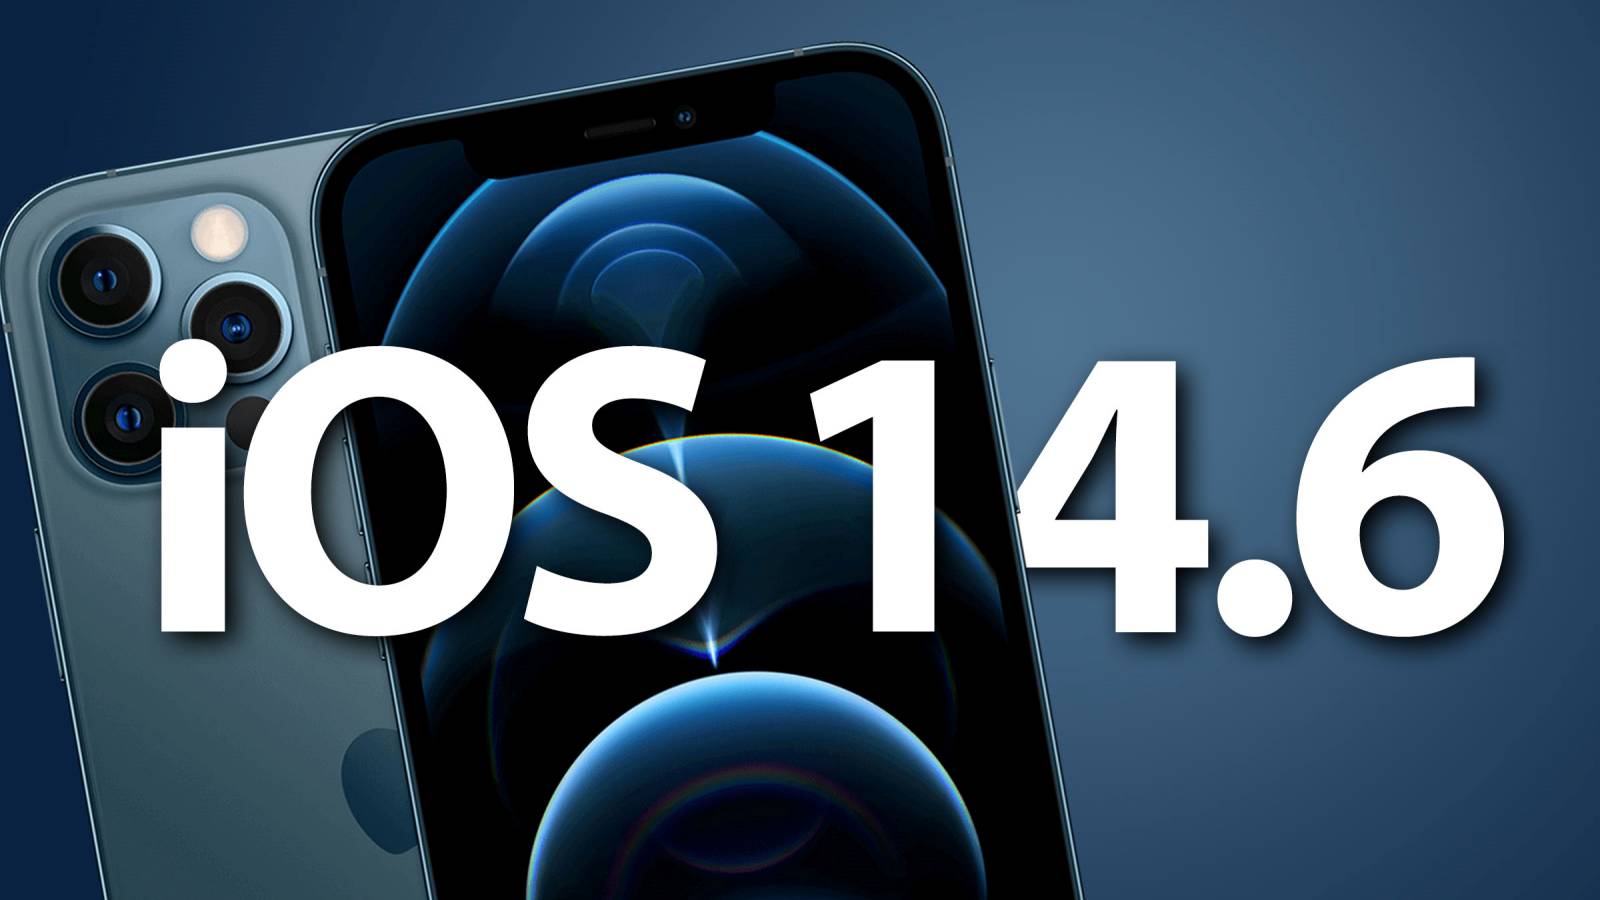 iOS 14.6 a fost lansat, Lista cu Noutati pentru iPhone si iPad